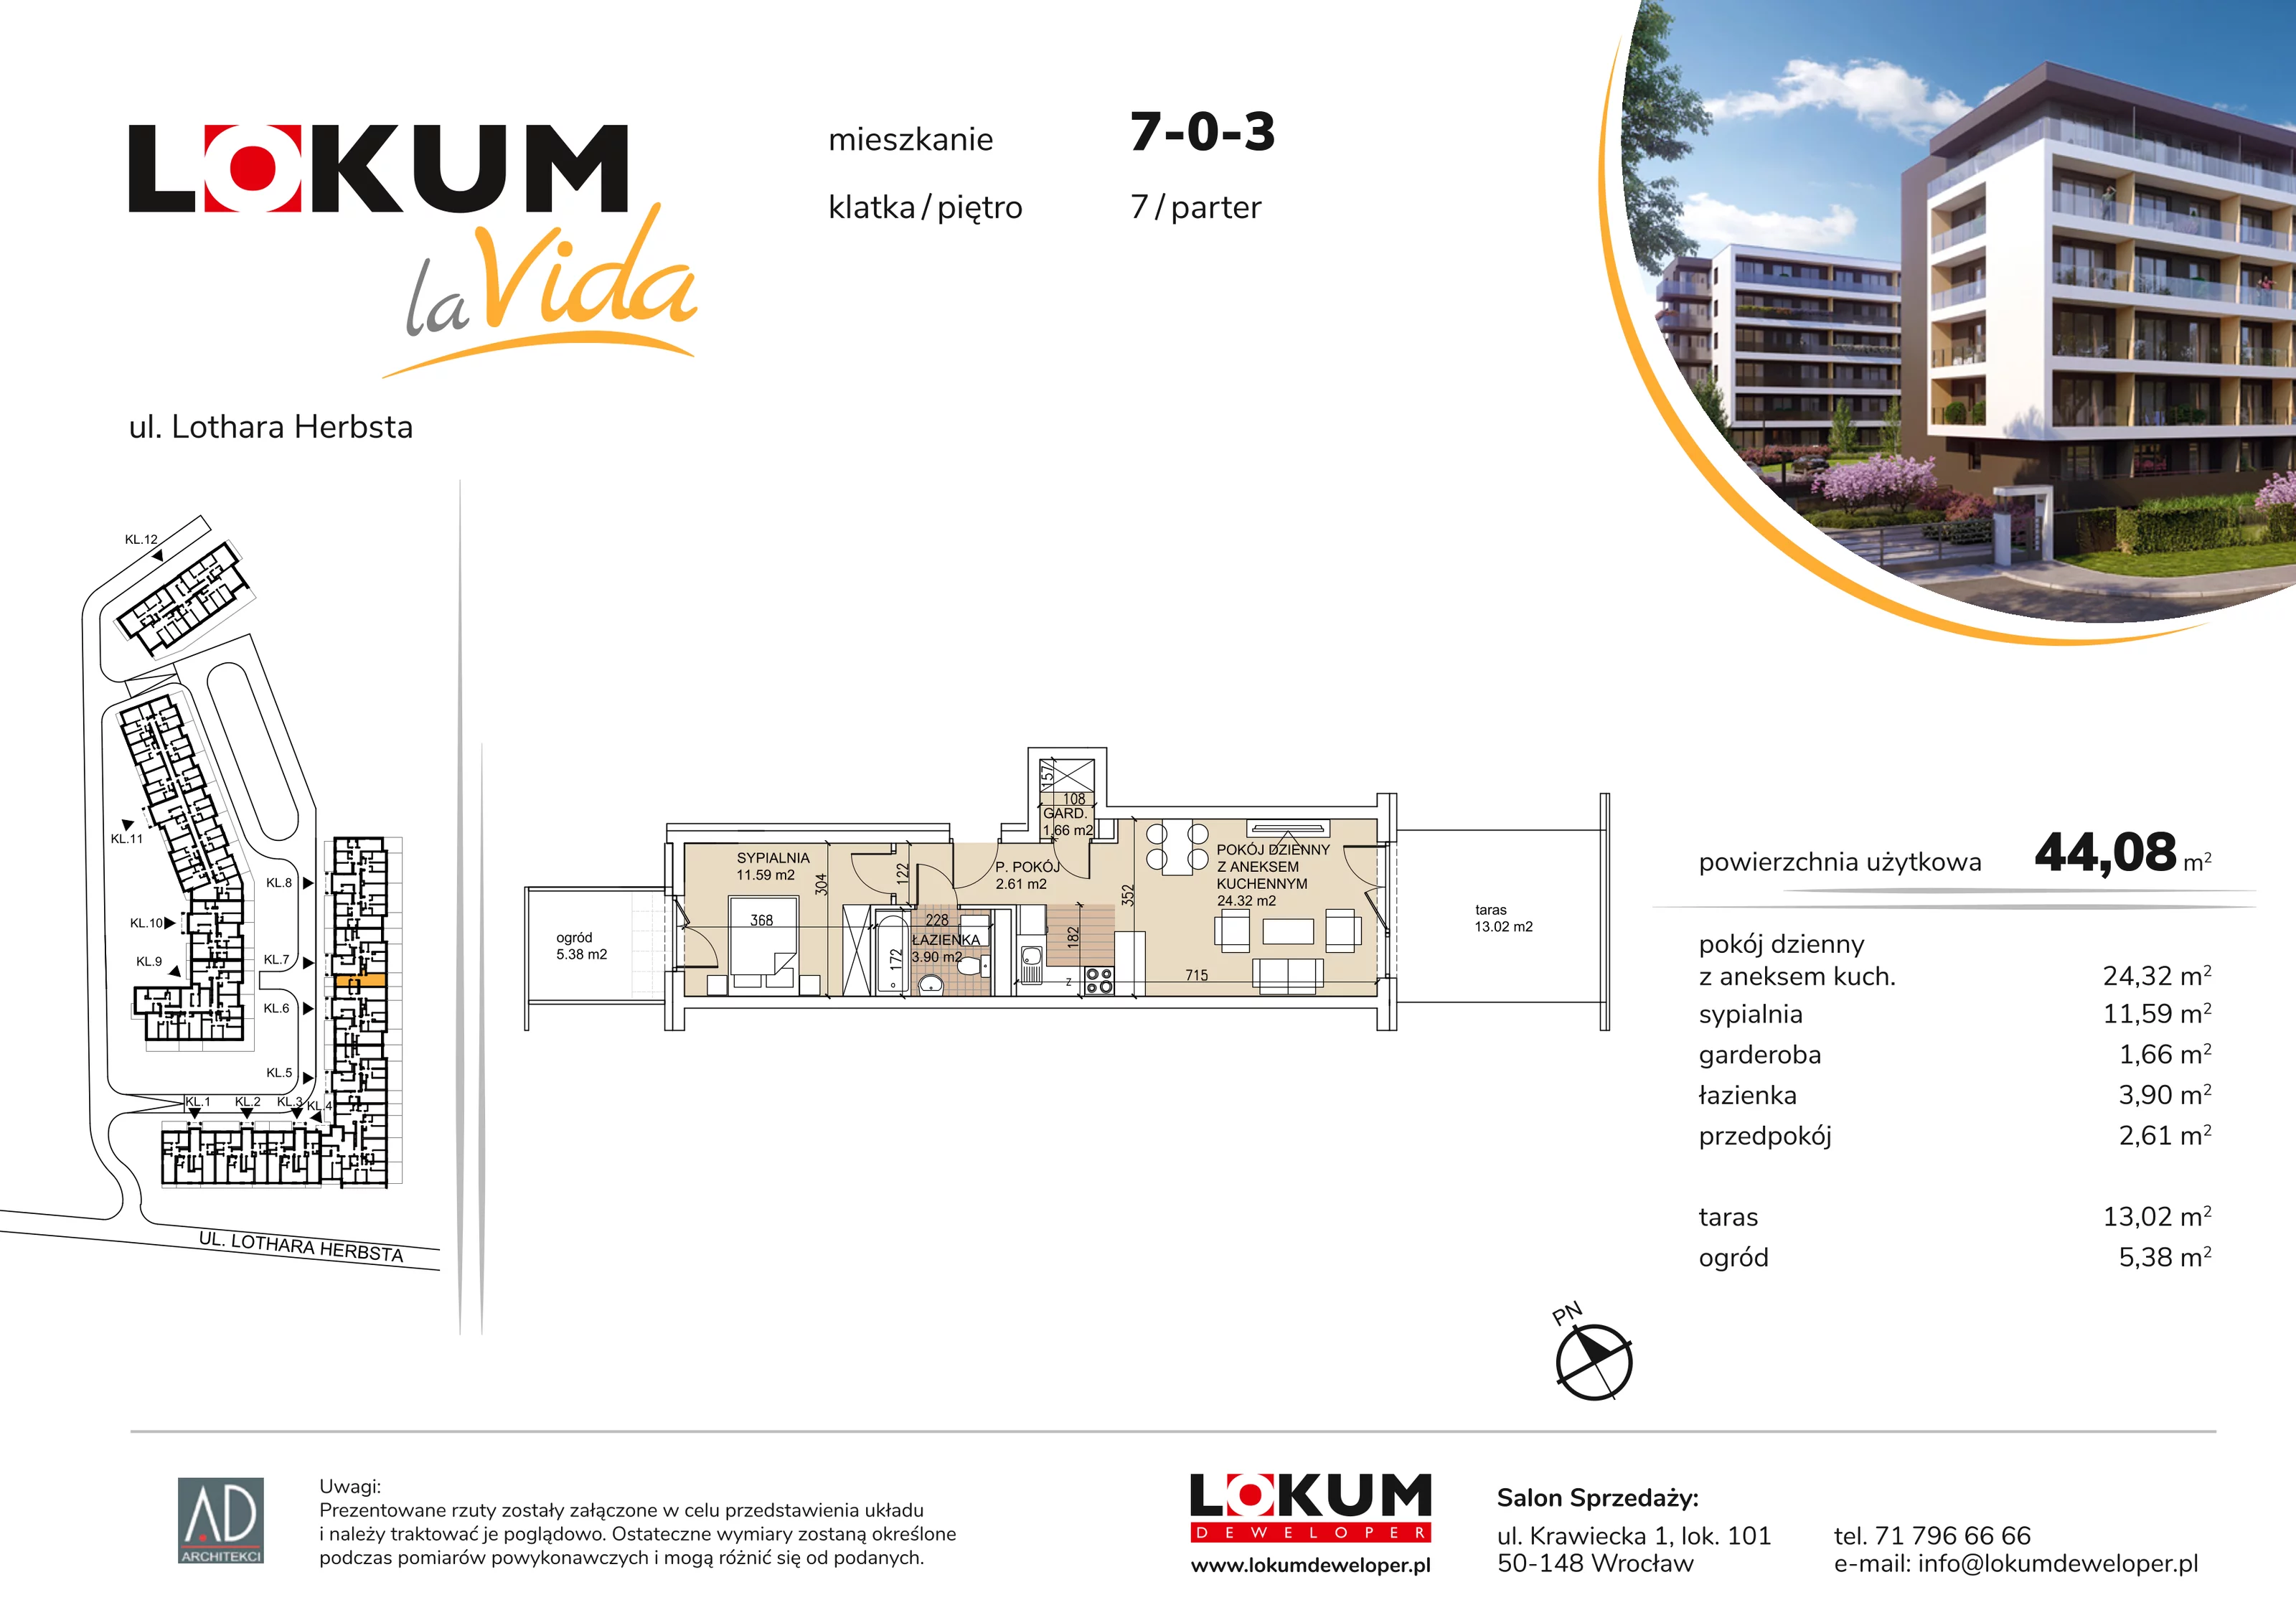 Mieszkanie 44,08 m², parter, oferta nr 7-0-3, Lokum la Vida, Wrocław, Sołtysowice, ul. Lothara Herbsta